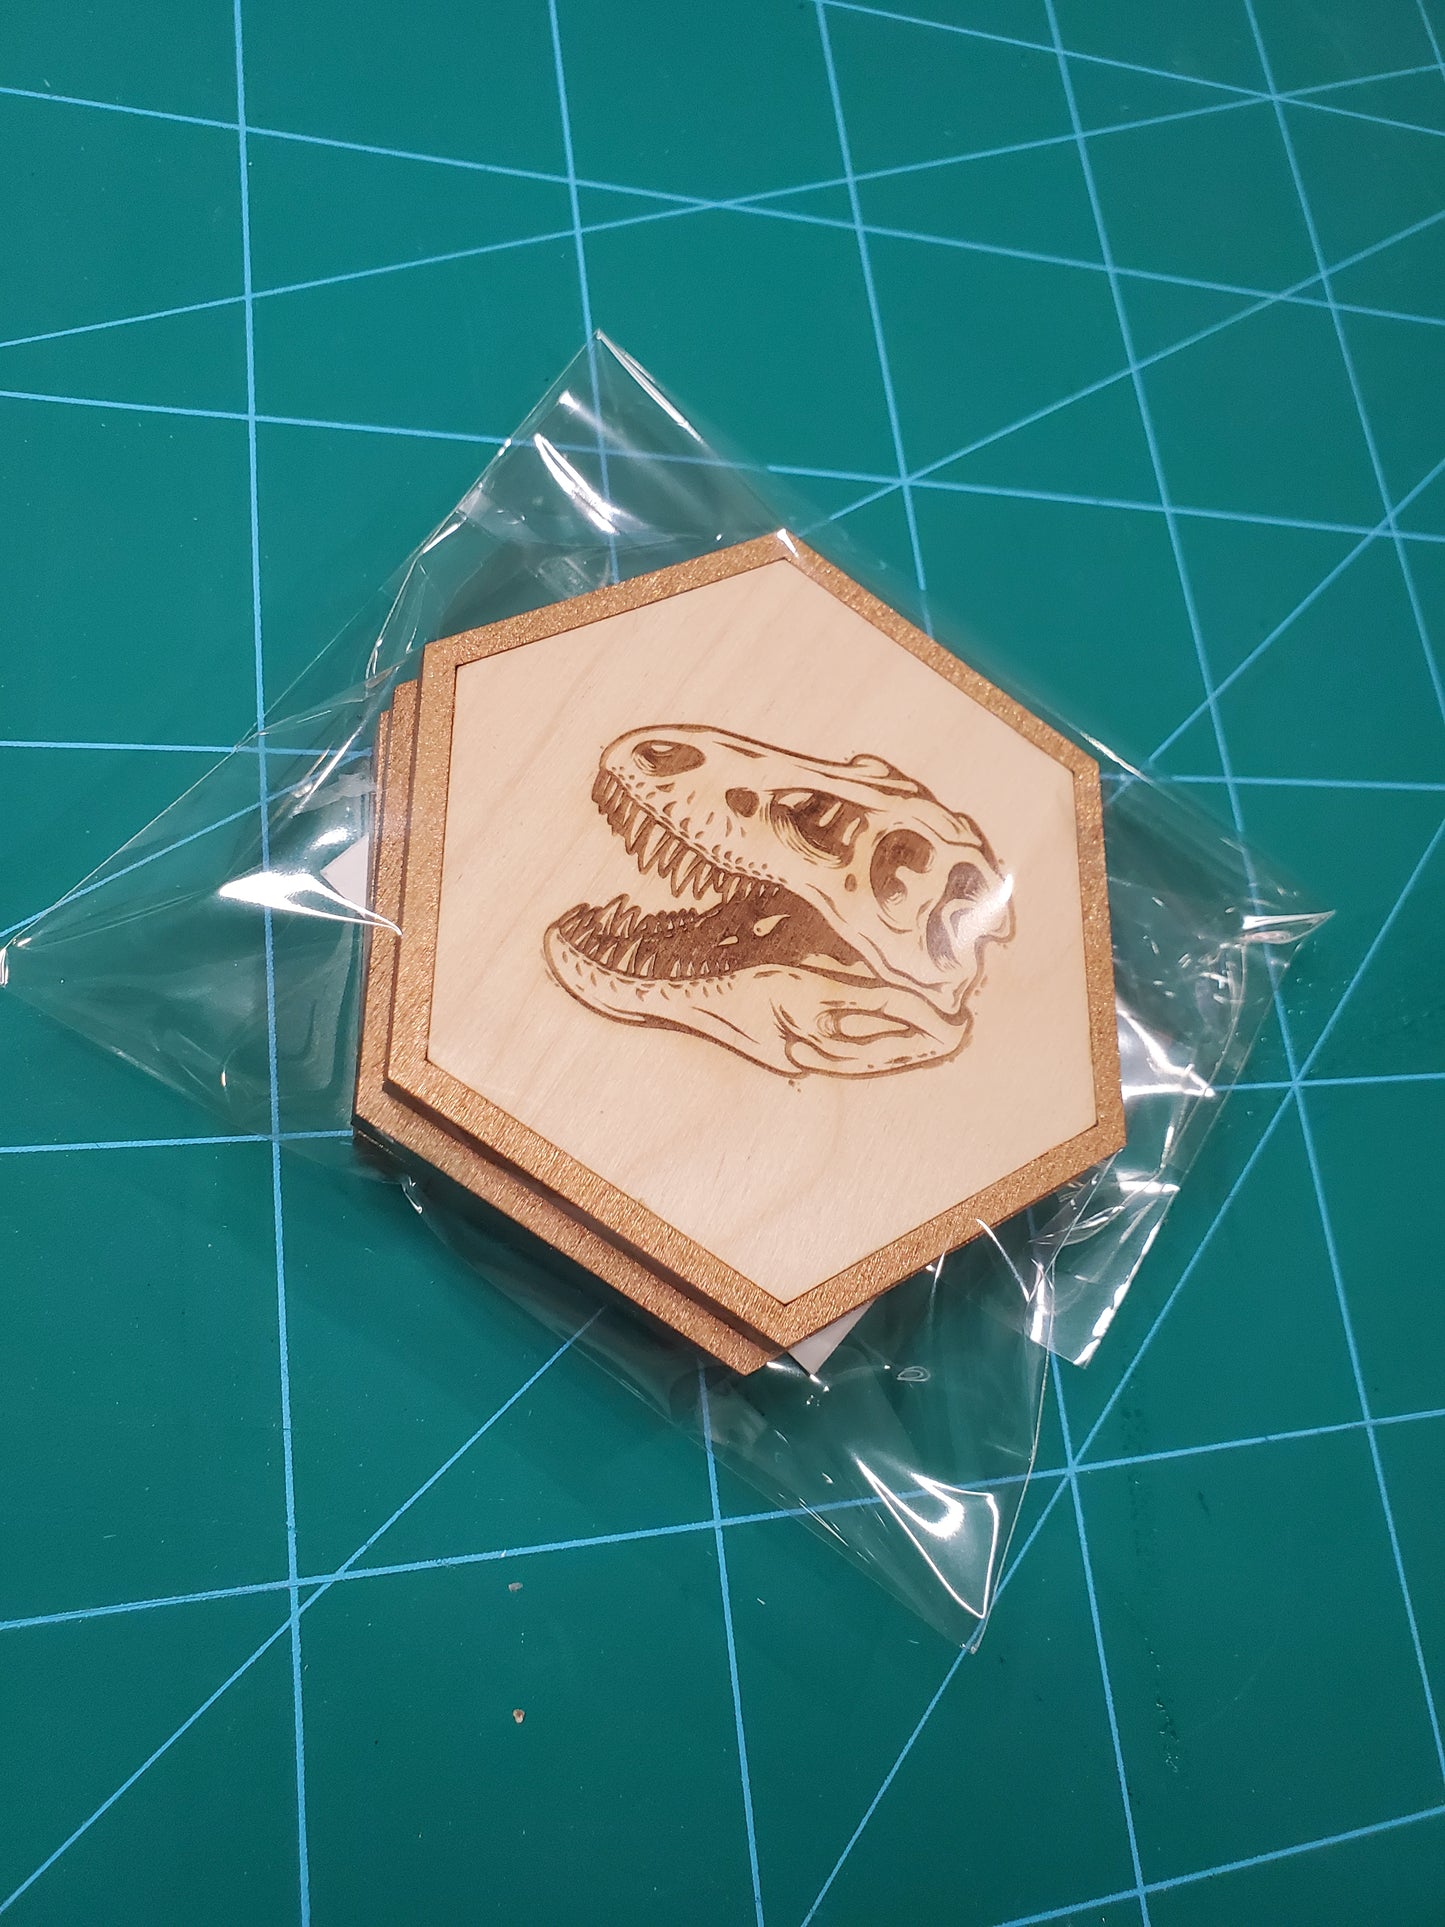 T-rex skull Dinosaur coasters